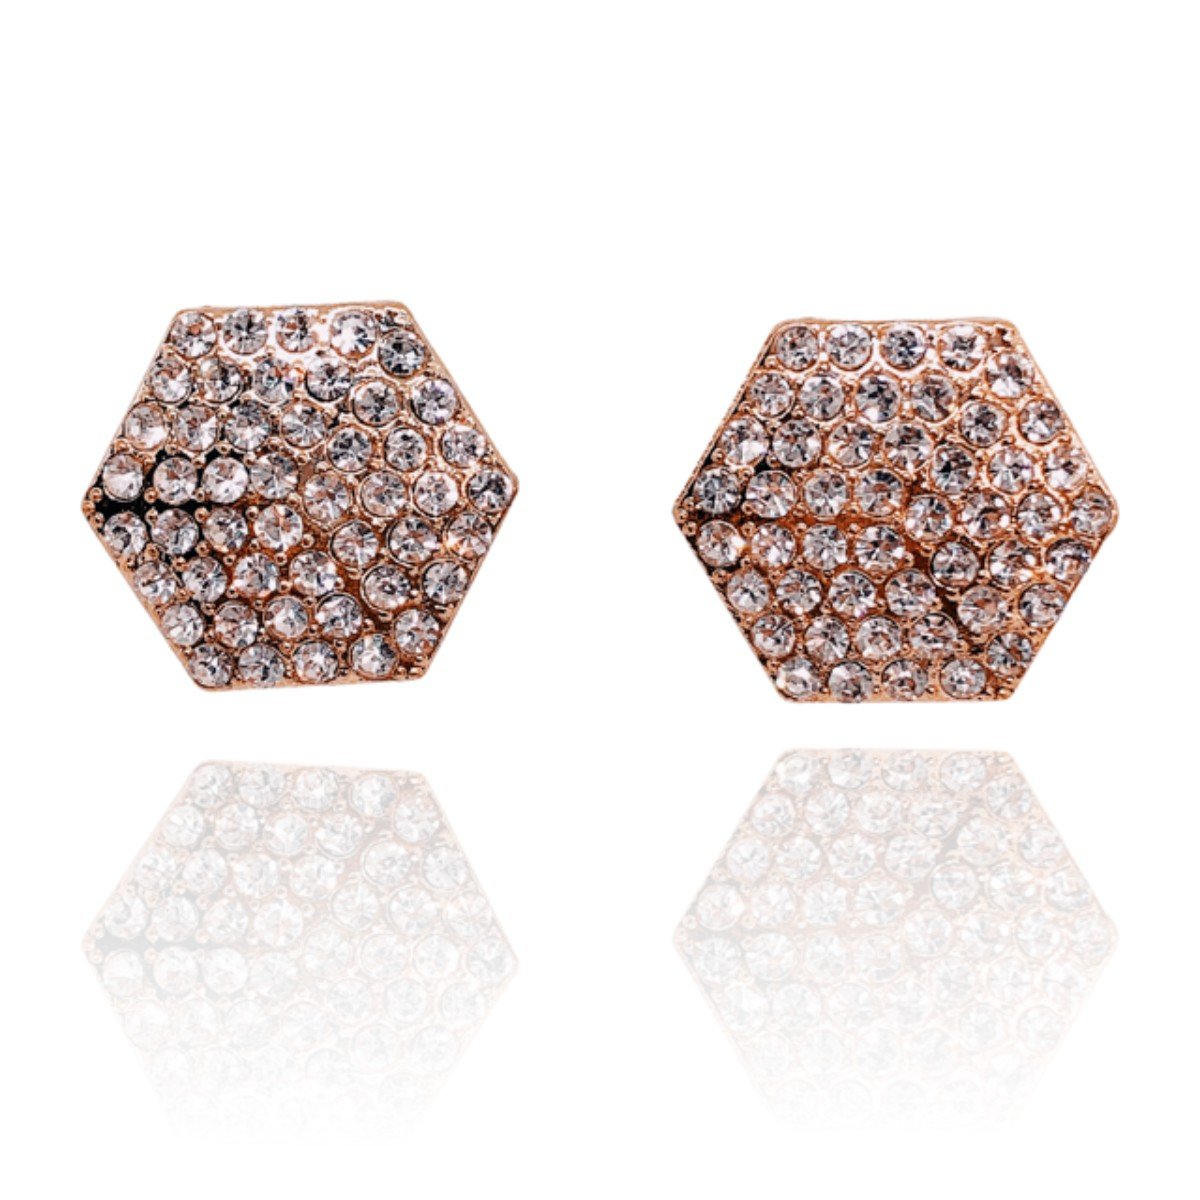 Brinco hexagonal cristal